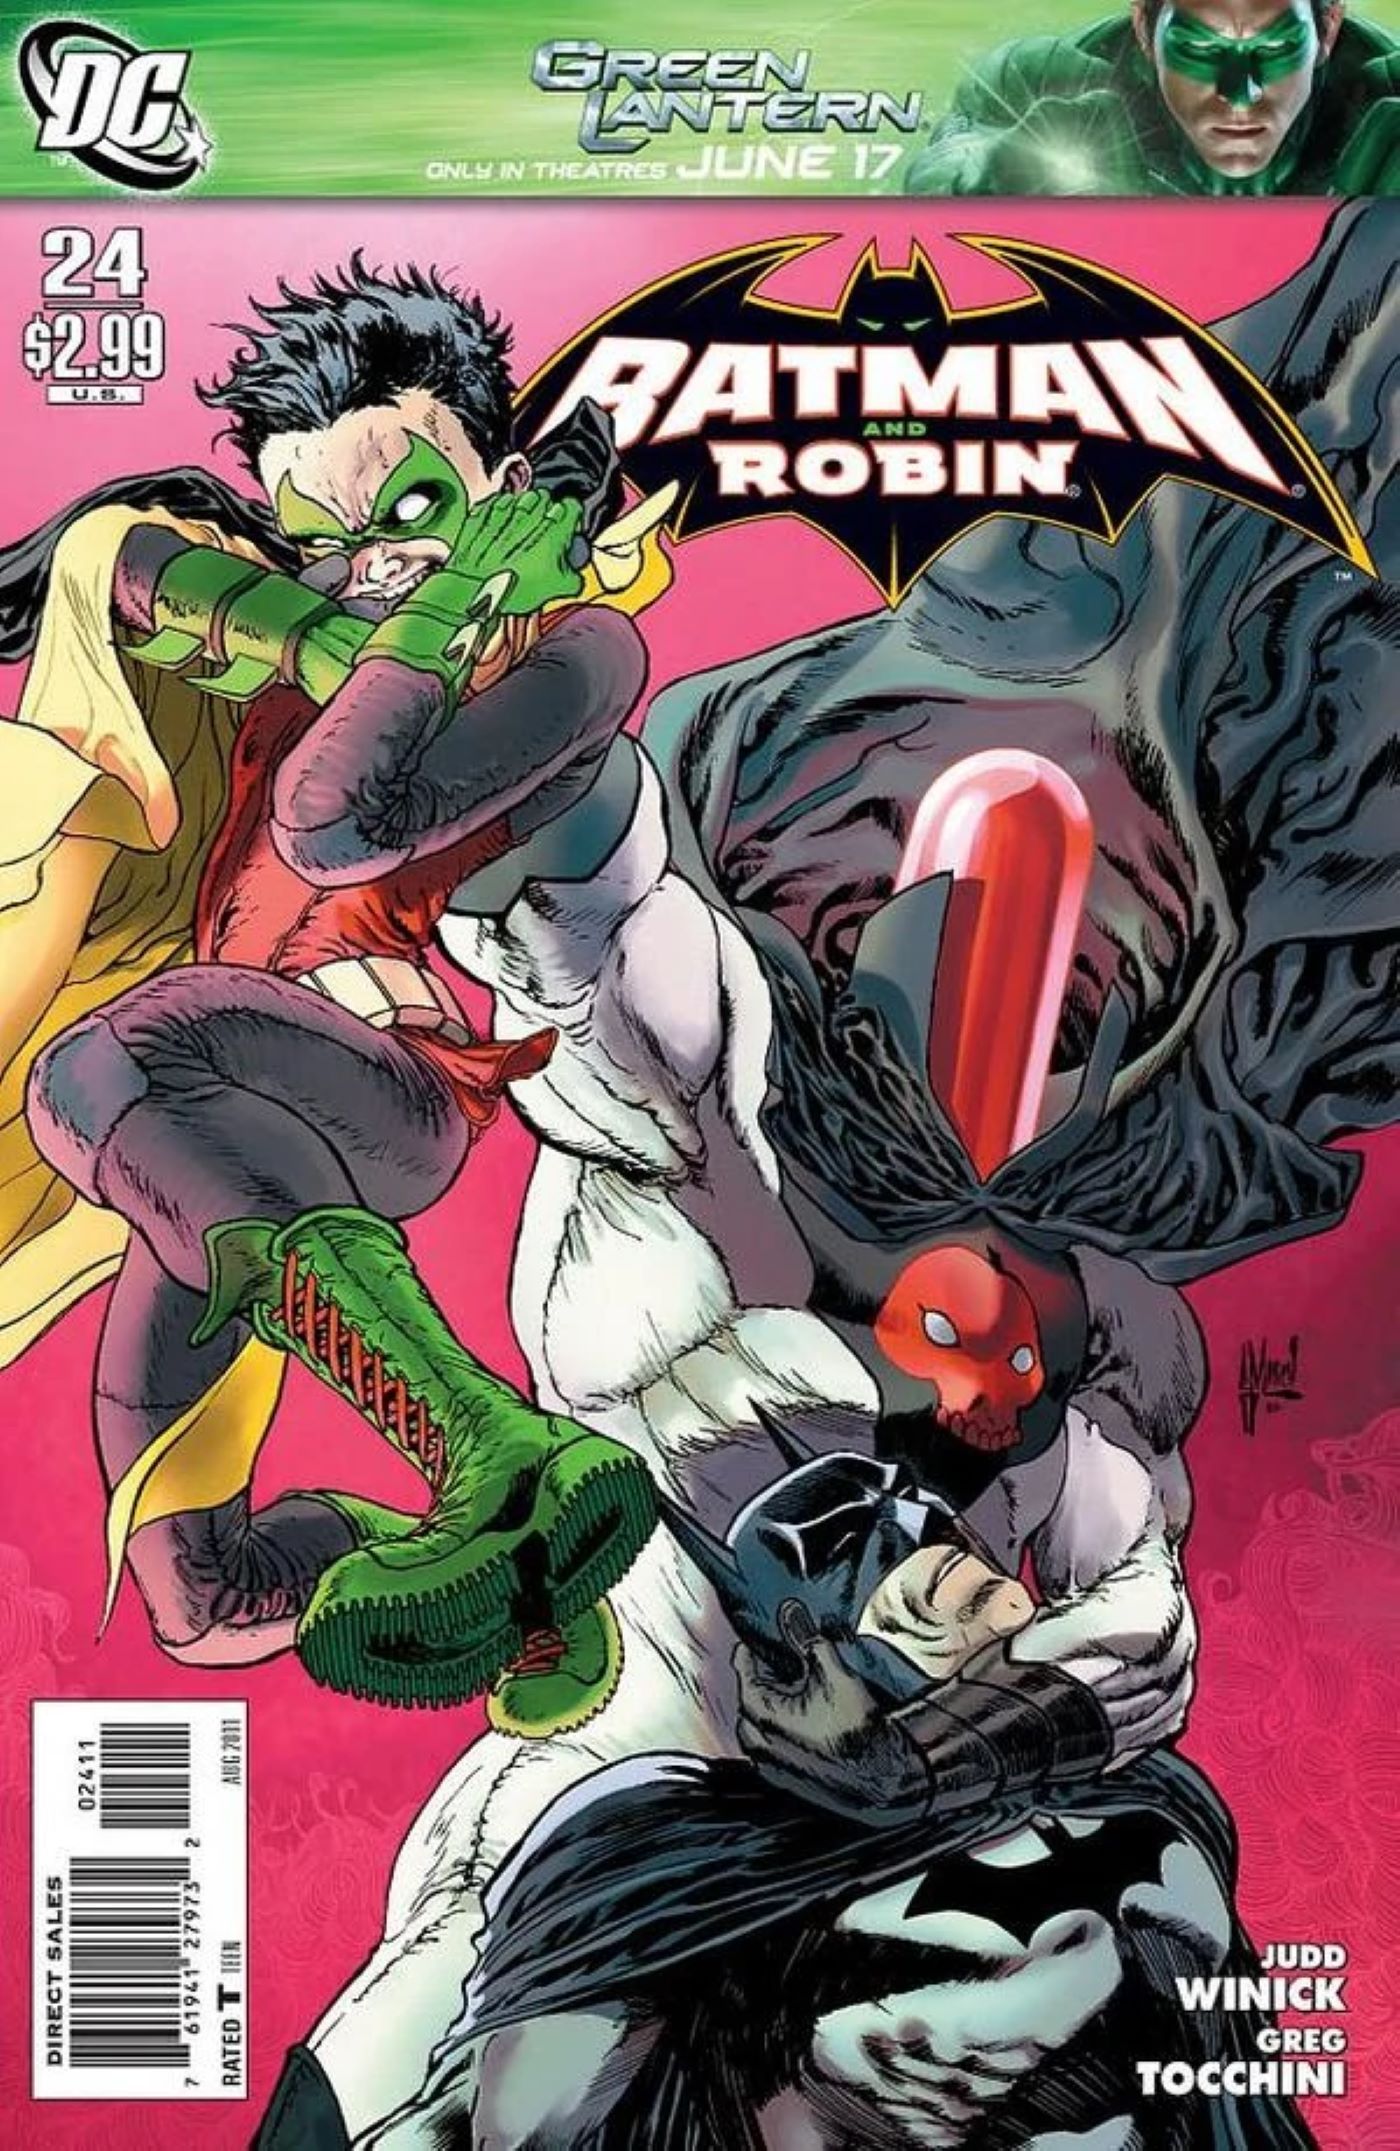 Capa de Batman e Robin #24 com Capuz Vermelho sufocando Damian Wayne